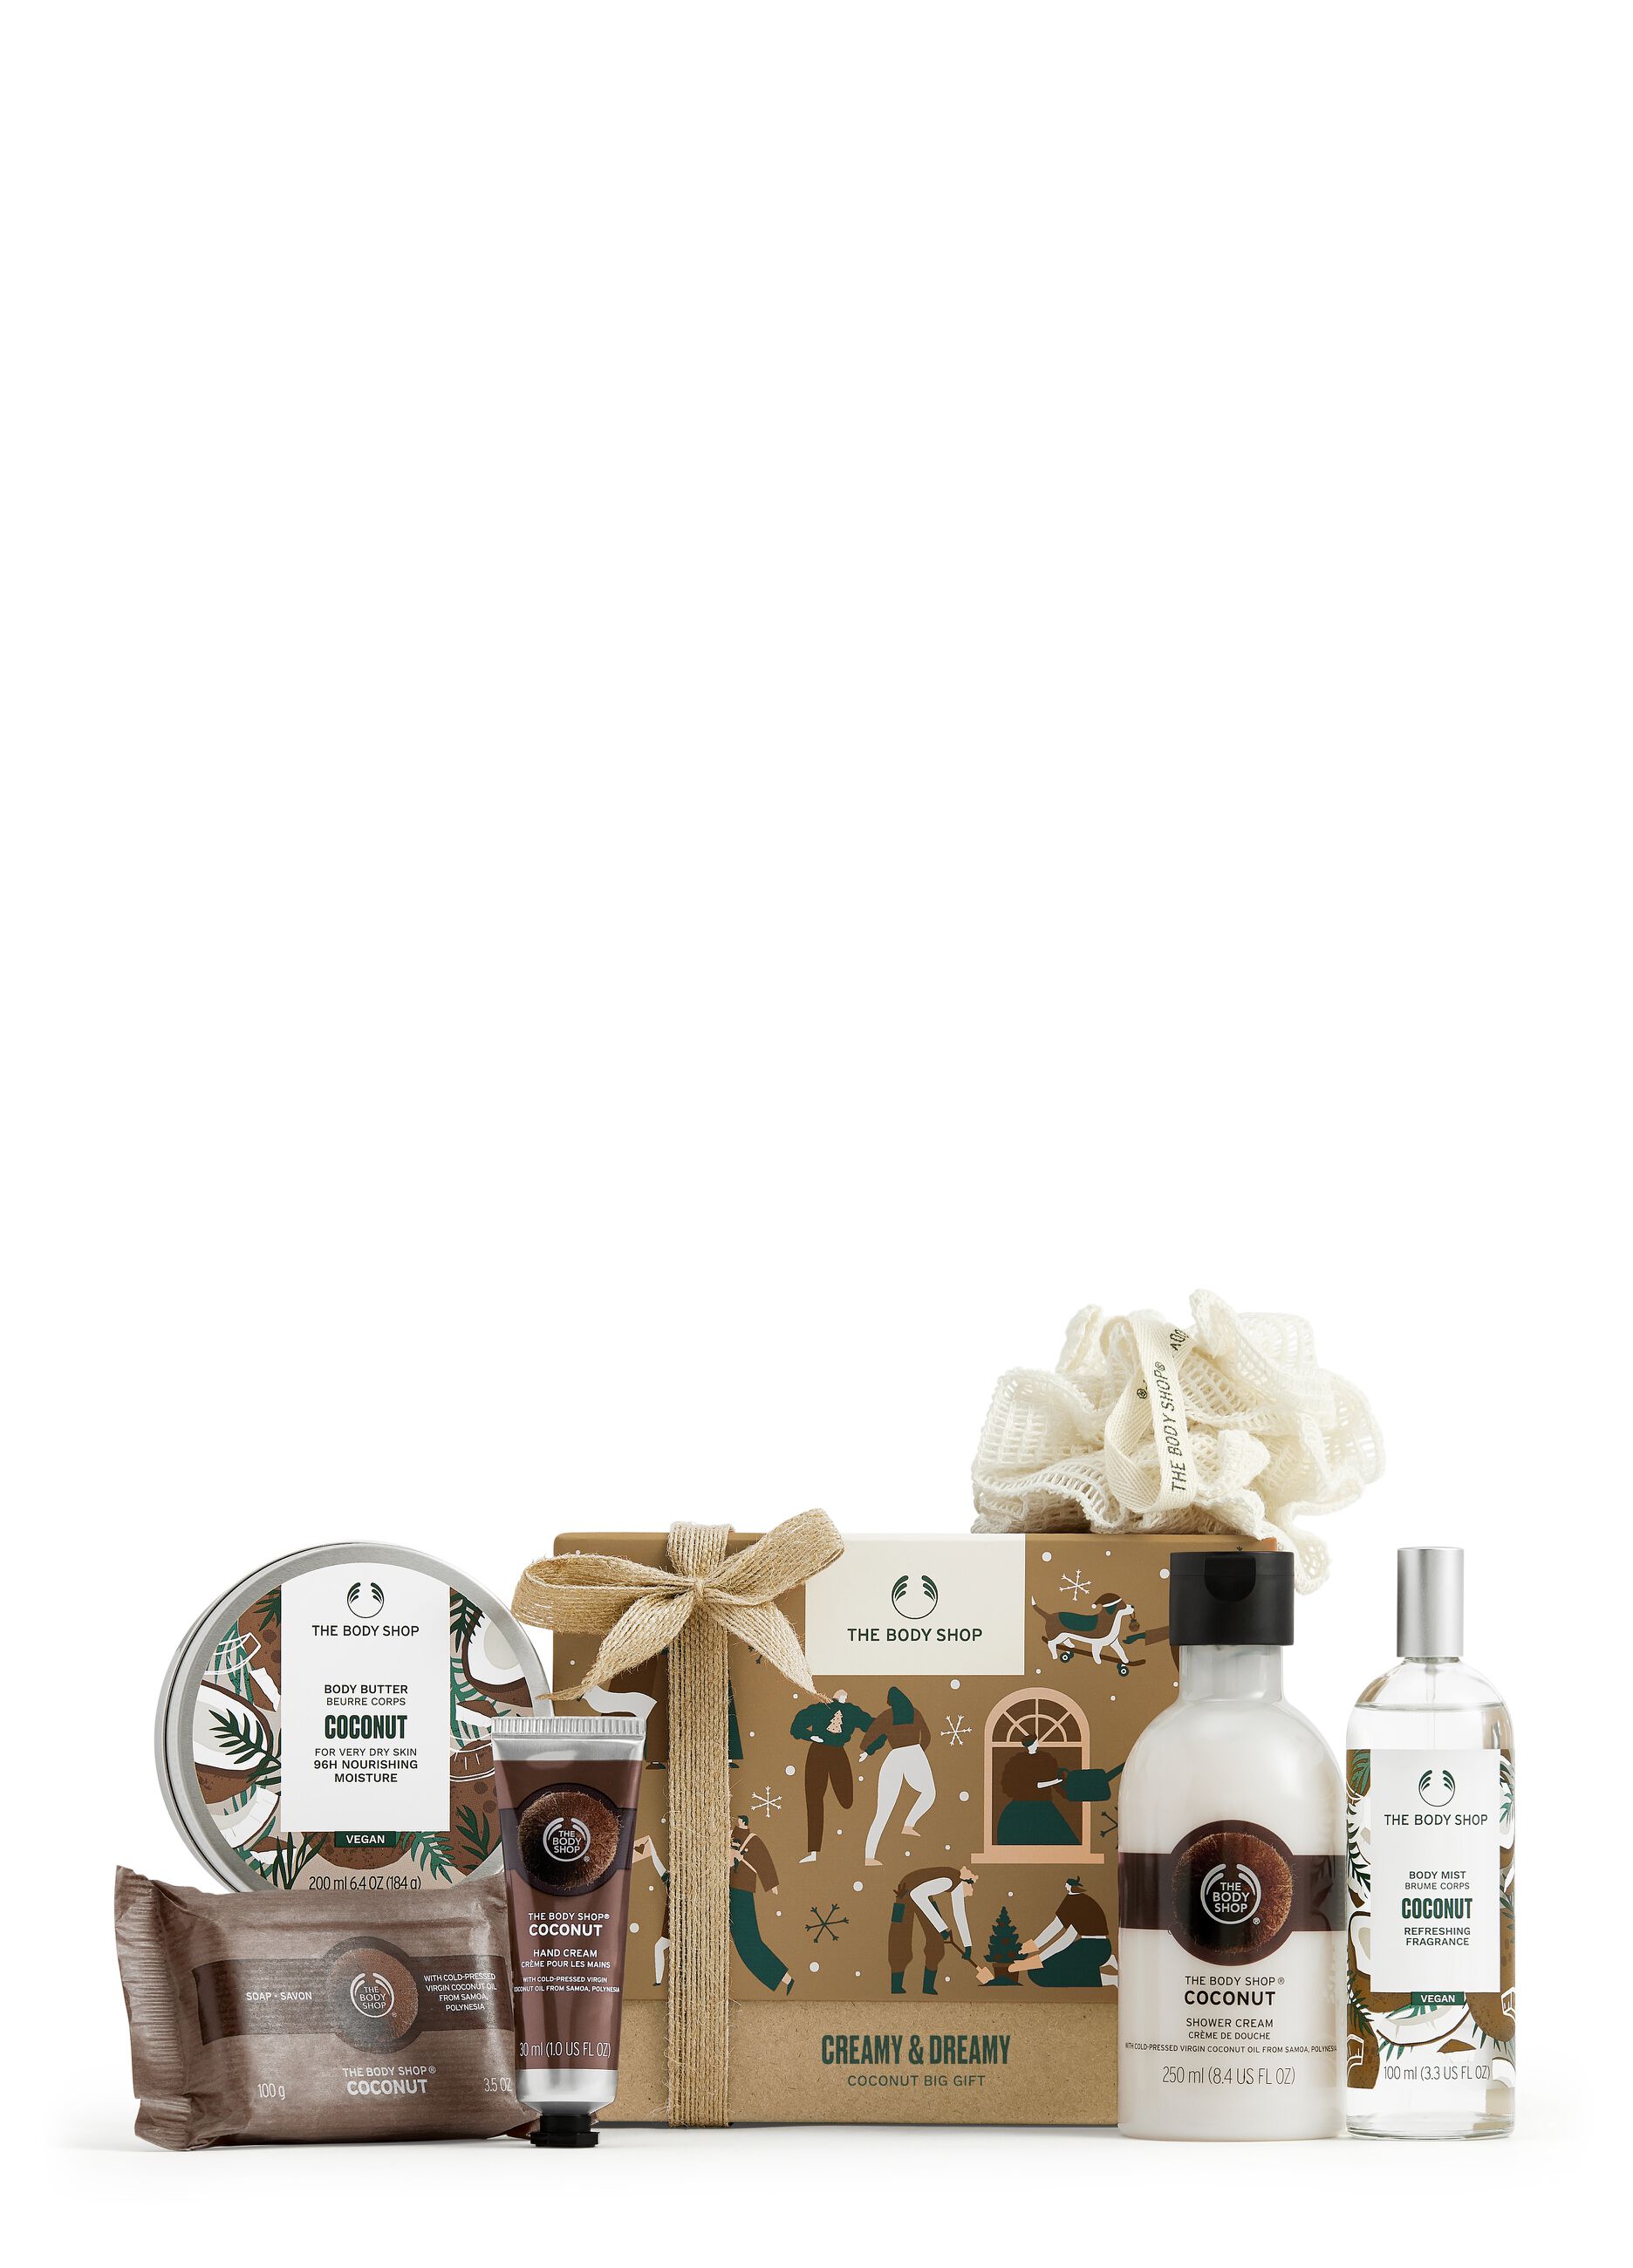 The Body Shop Creamy & Dreamy coconut gift box